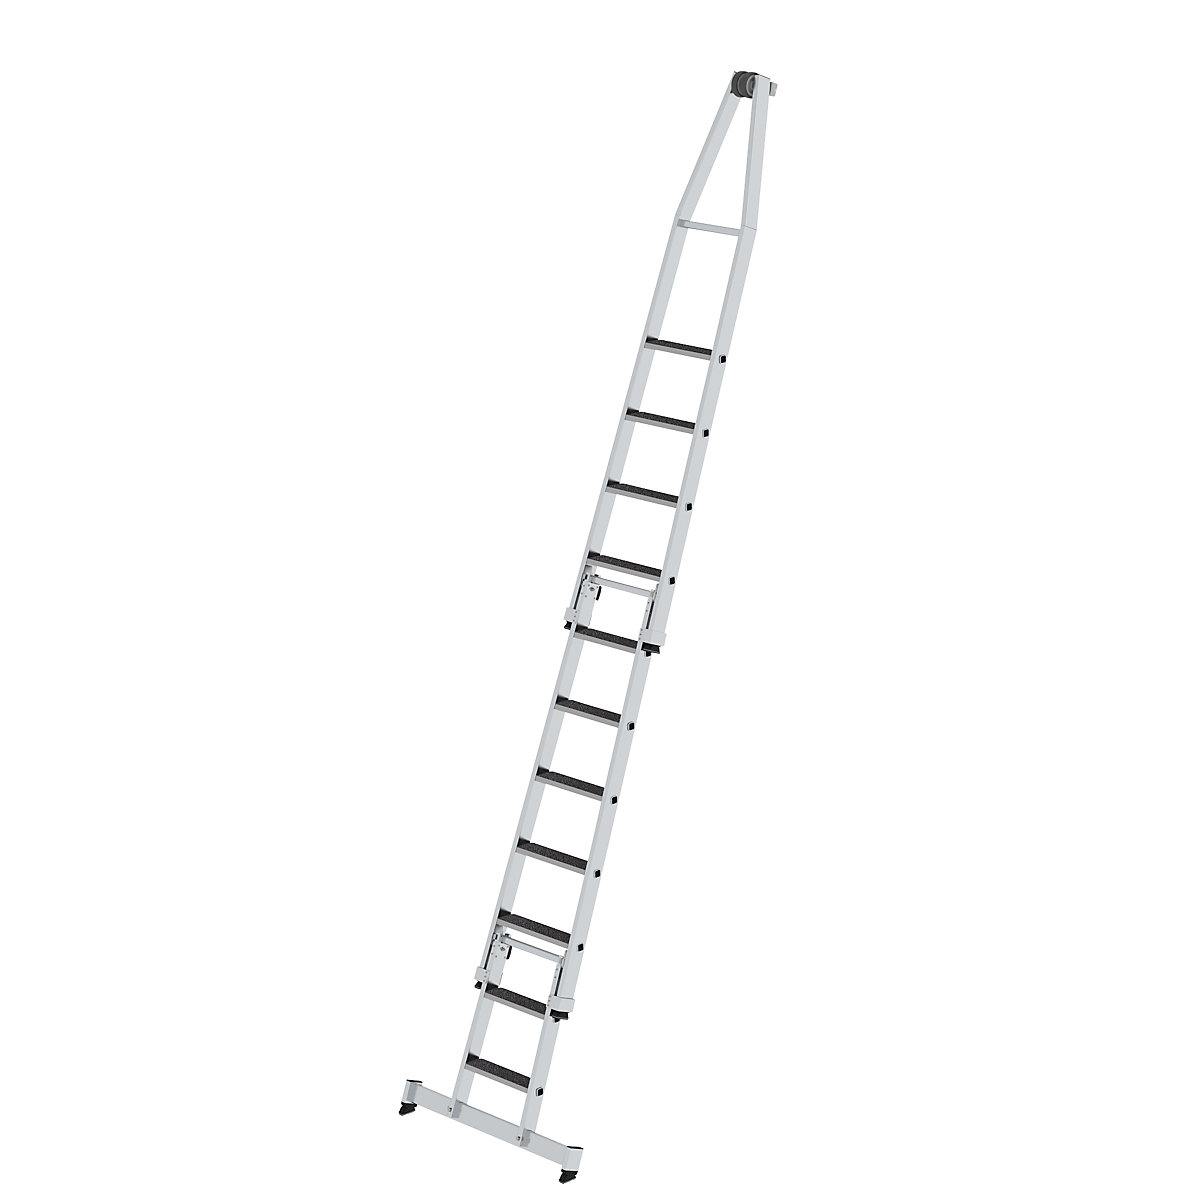 Escada para limpar vidros – MUNK, com apoio para os pés, 3 peças, 11 degraus-5